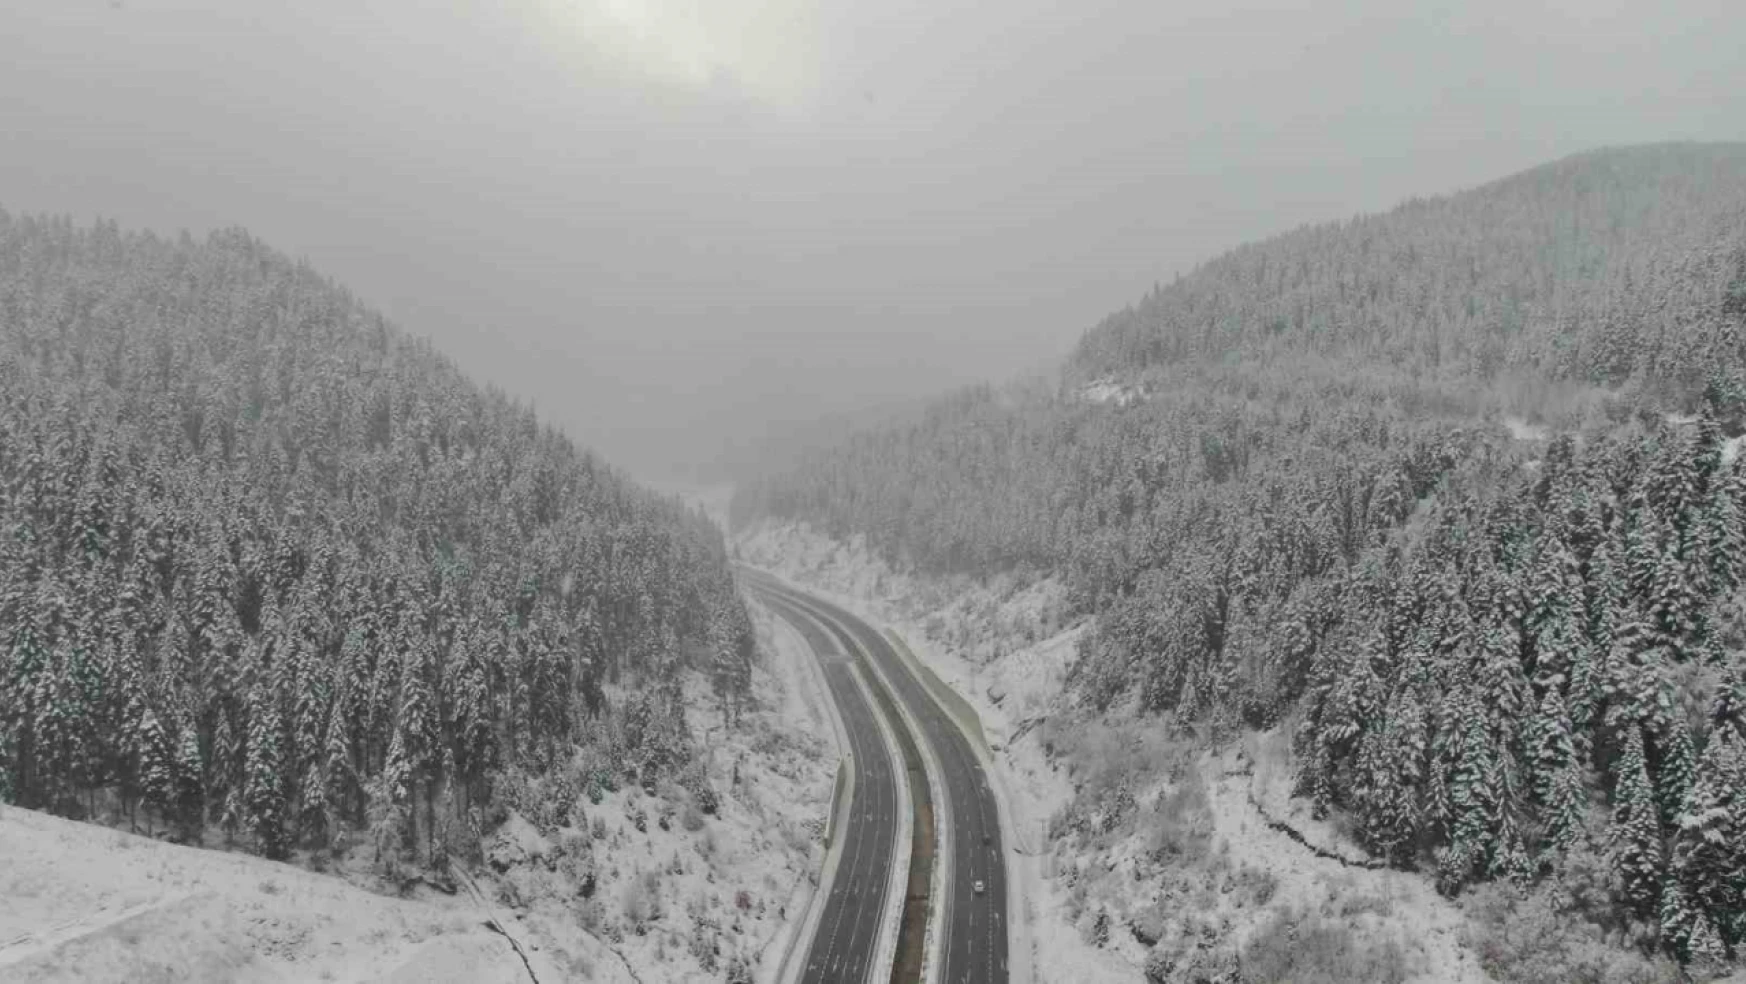 Ilgaz Dağı'nda yoğun kar yağışı: Beyaz örtü ile kaplandı